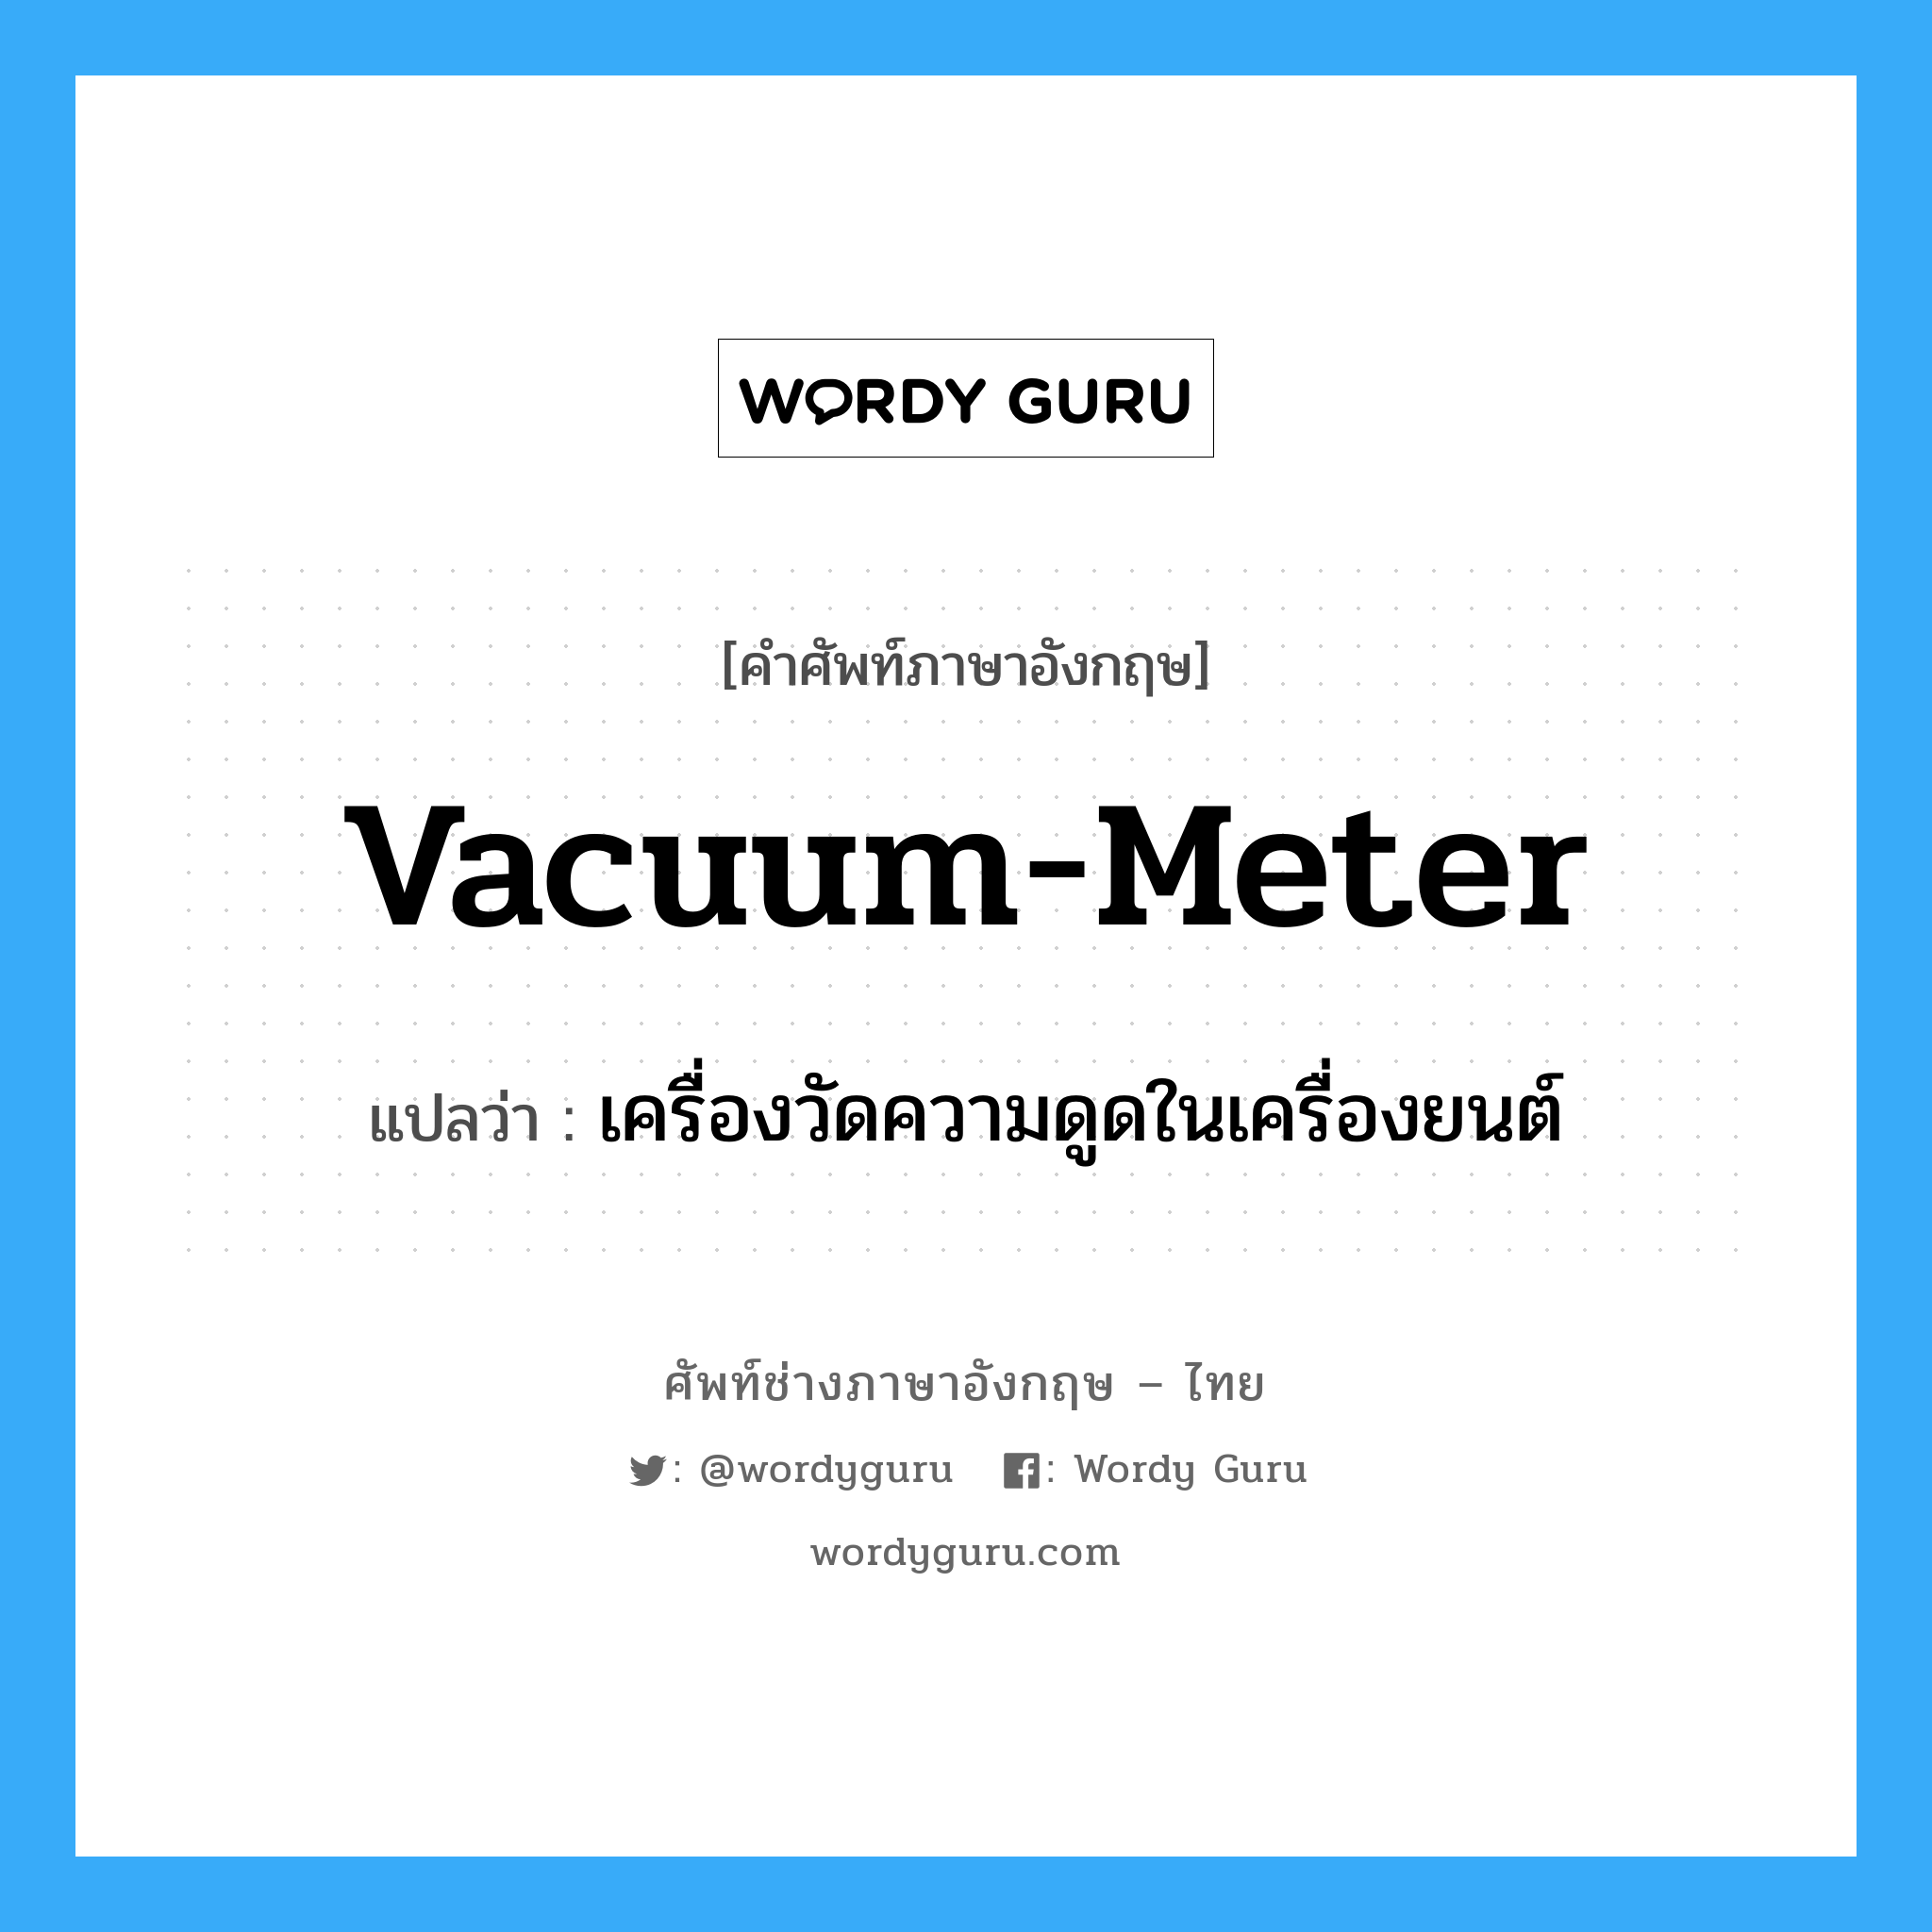 vacuum-meter แปลว่า?, คำศัพท์ช่างภาษาอังกฤษ - ไทย vacuum-meter คำศัพท์ภาษาอังกฤษ vacuum-meter แปลว่า เครื่องวัดความดูดในเครื่องยนต์